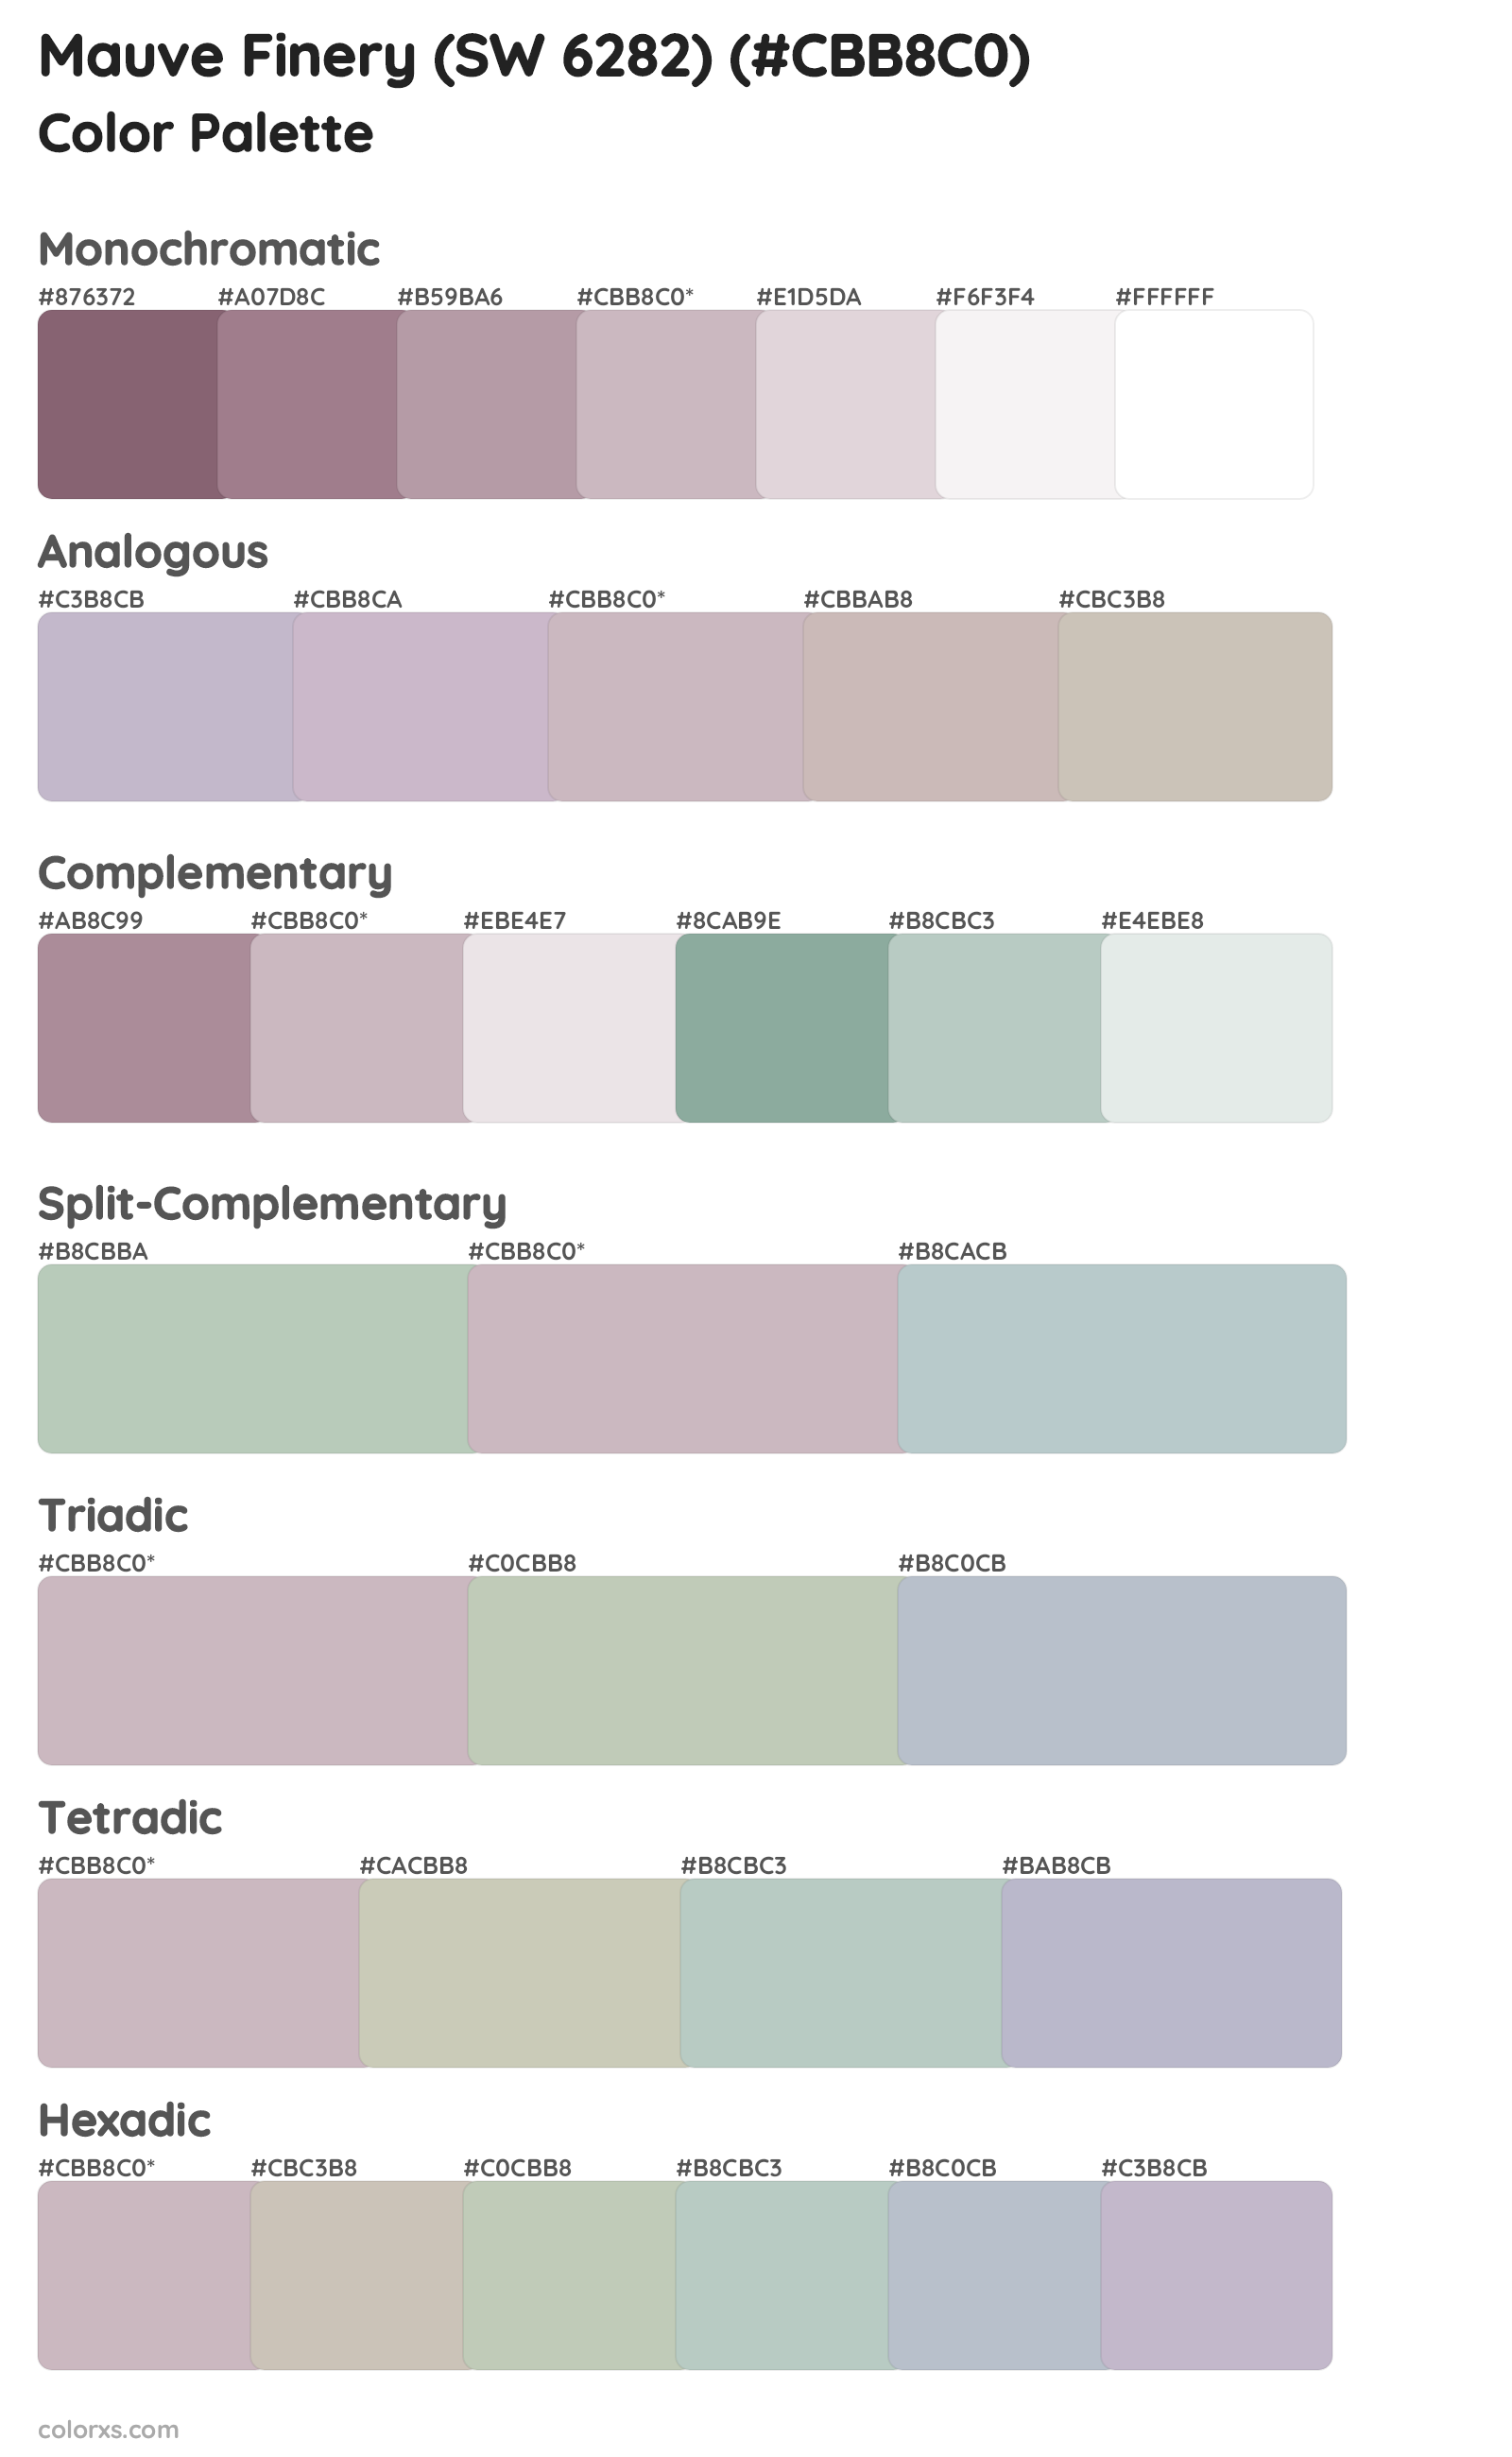 Mauve Finery (SW 6282) Color Scheme Palettes